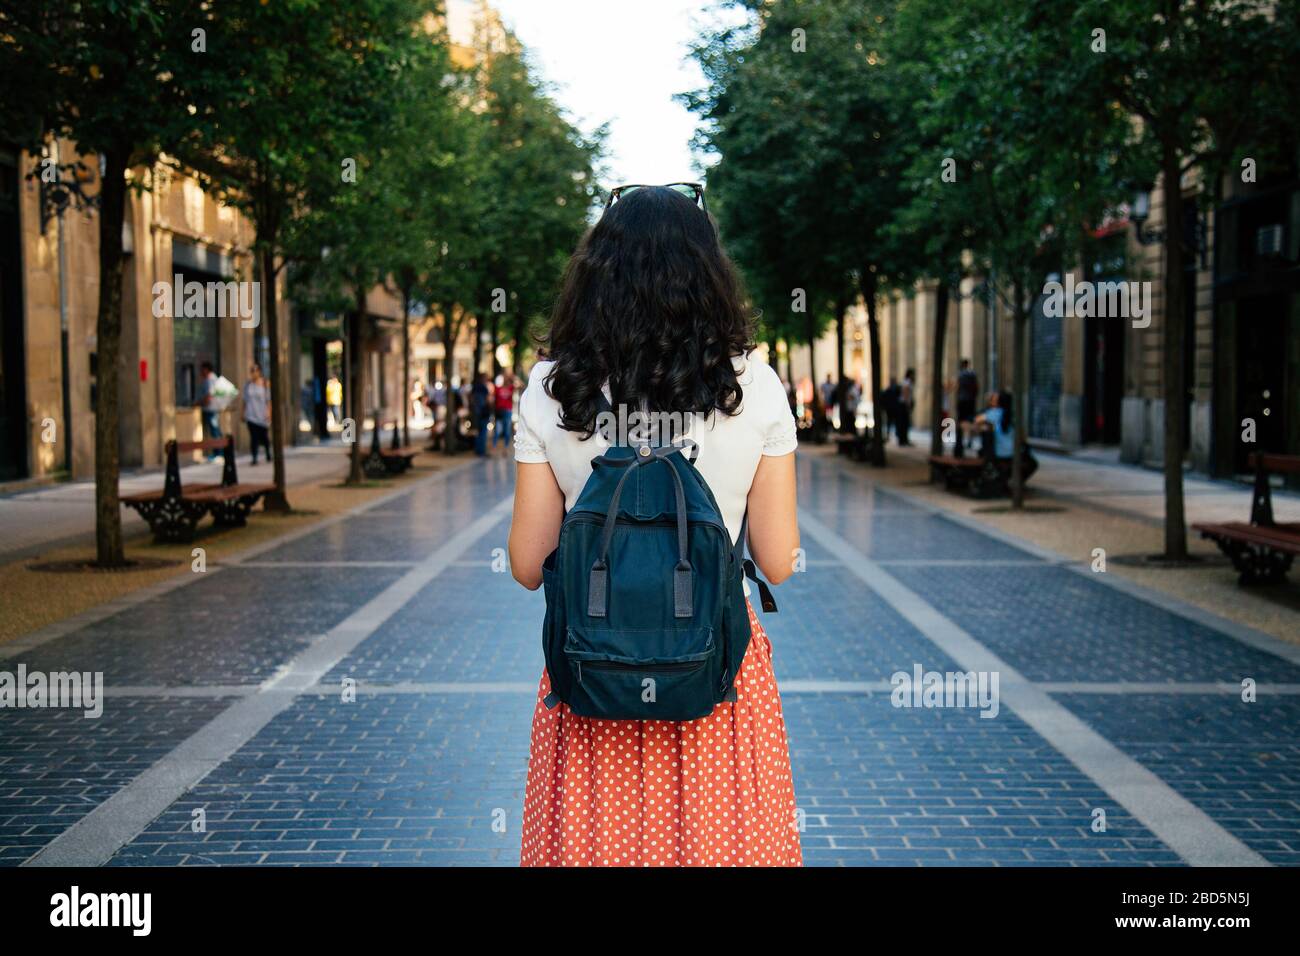 Vue arrière d'une femme de tourisme avec sac à dos prêt à visiter la ville.  Concept de voyage seul Photo Stock - Alamy